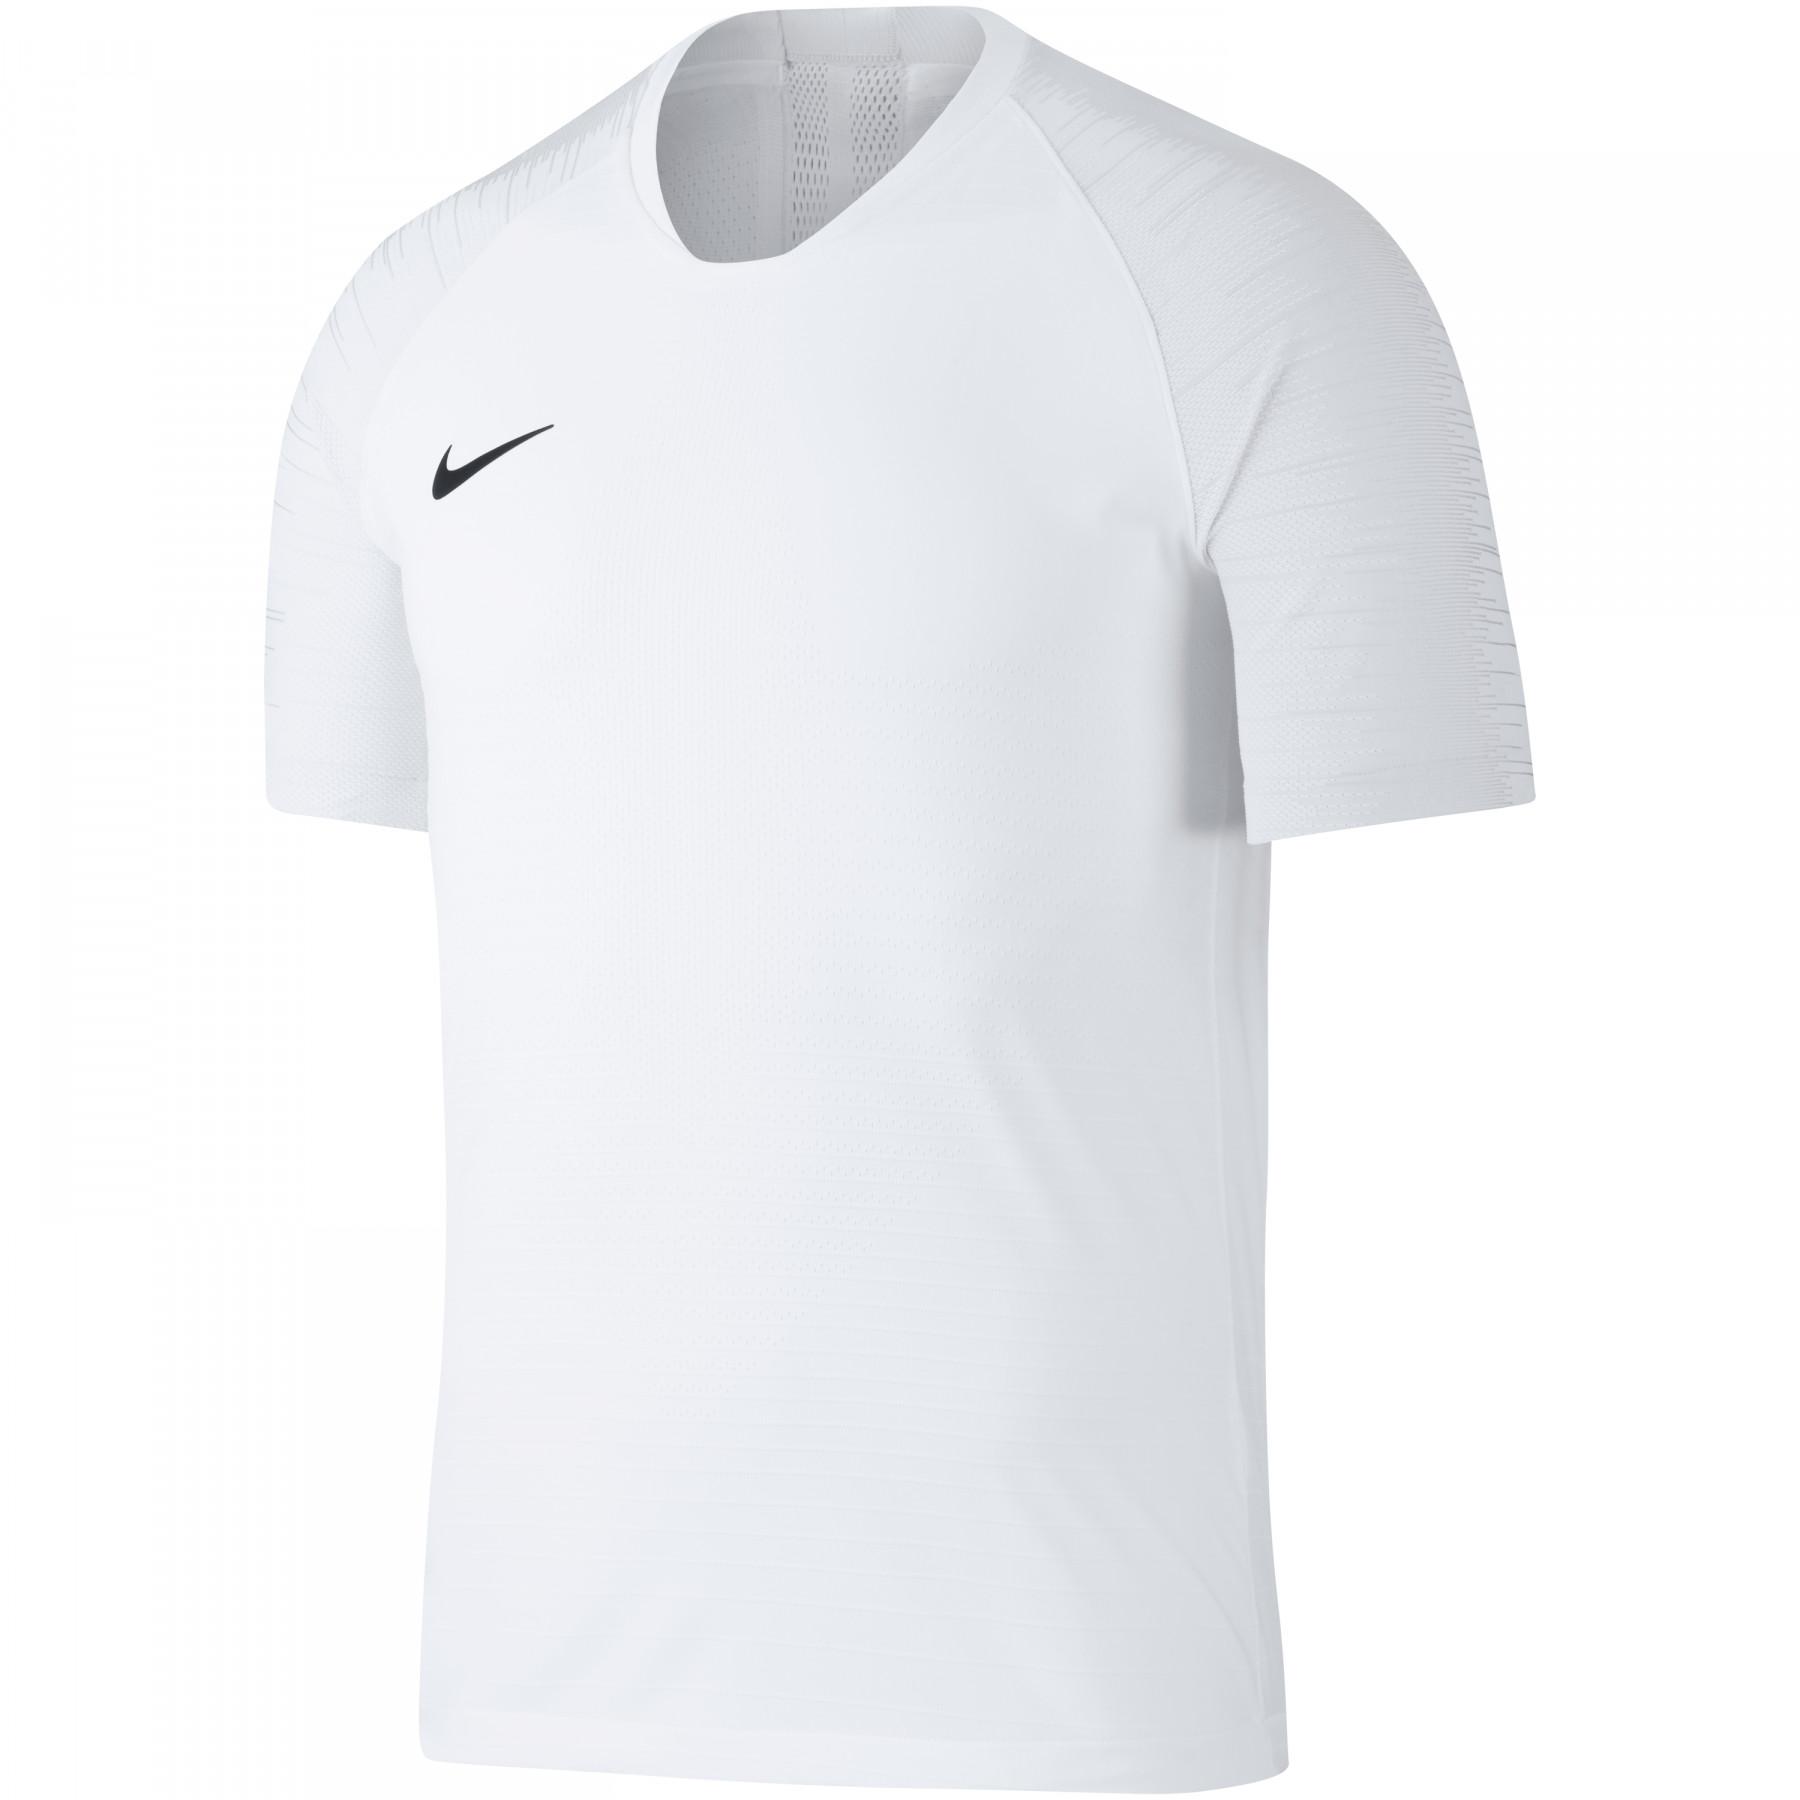 Acusador Joseph Banks Estudiante Jersey Nike VaporKnit II - Nike - Camisetas de entrenamiento - Ropa de  fútbol